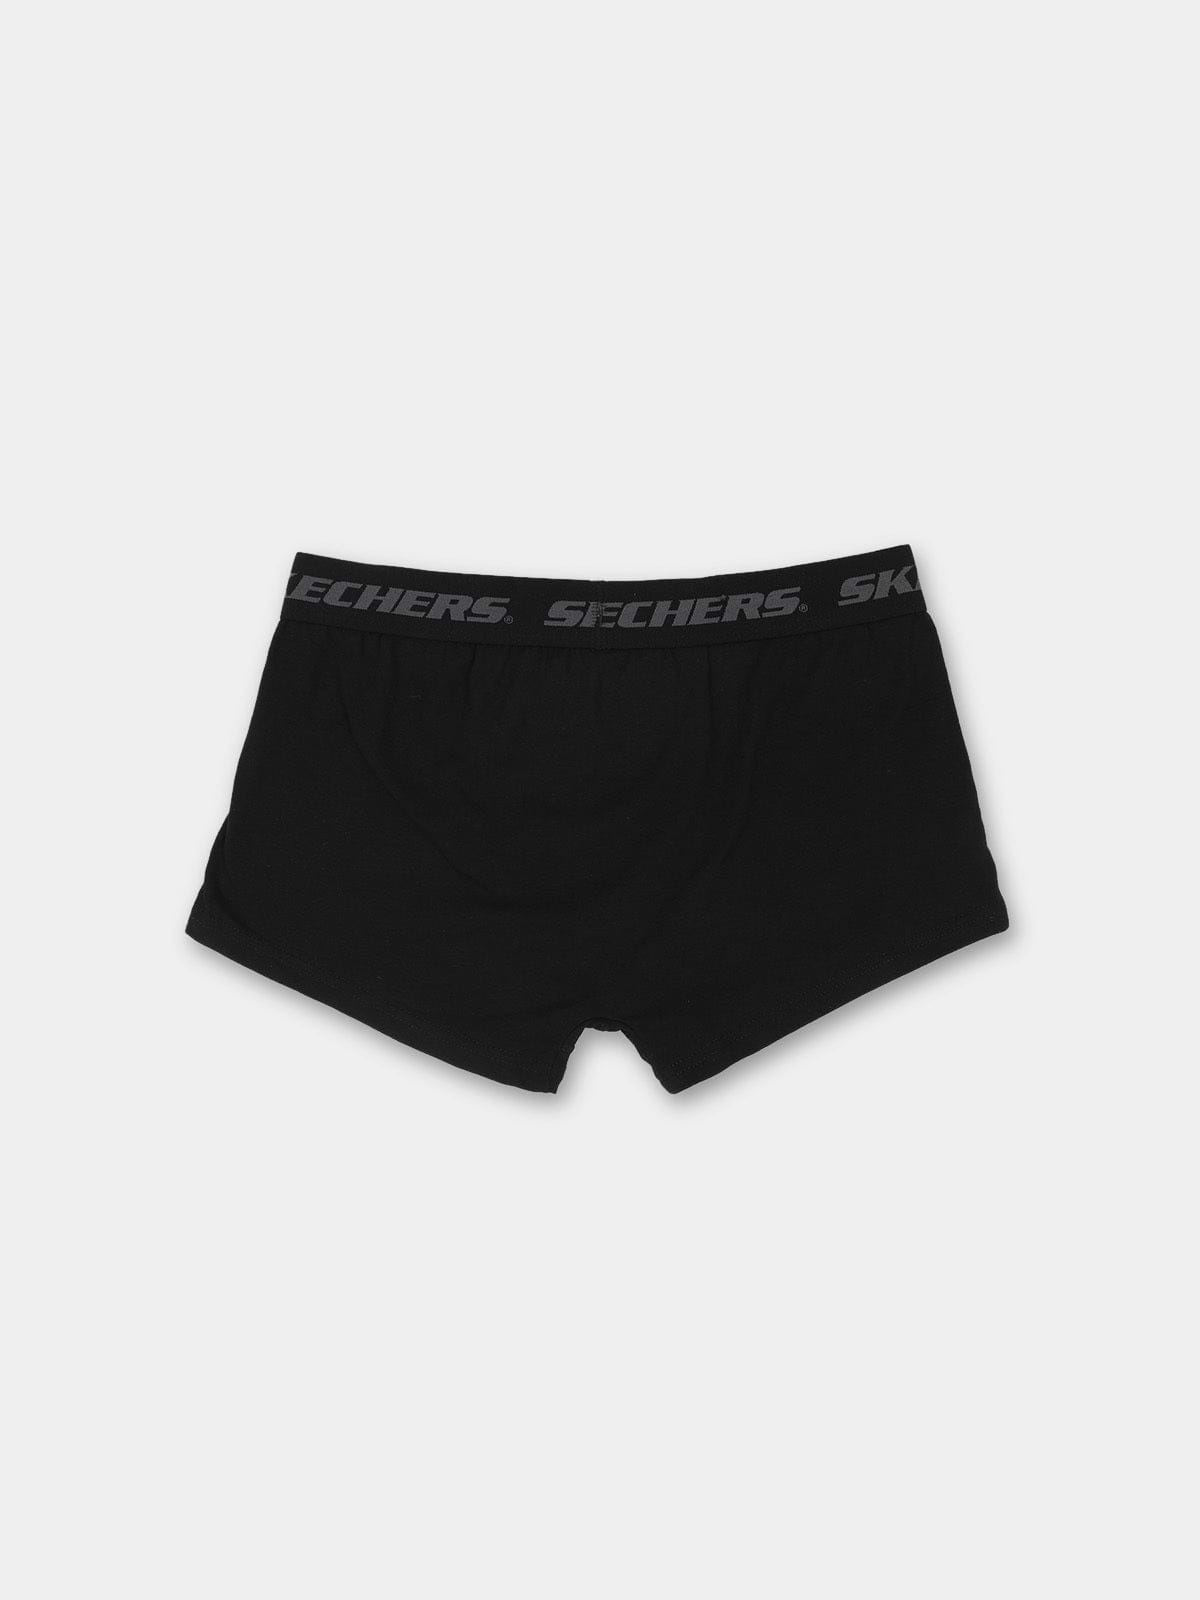 תחתון בוקסר קצר עם לוגו // גברים- Skechers|סקצ'רס 